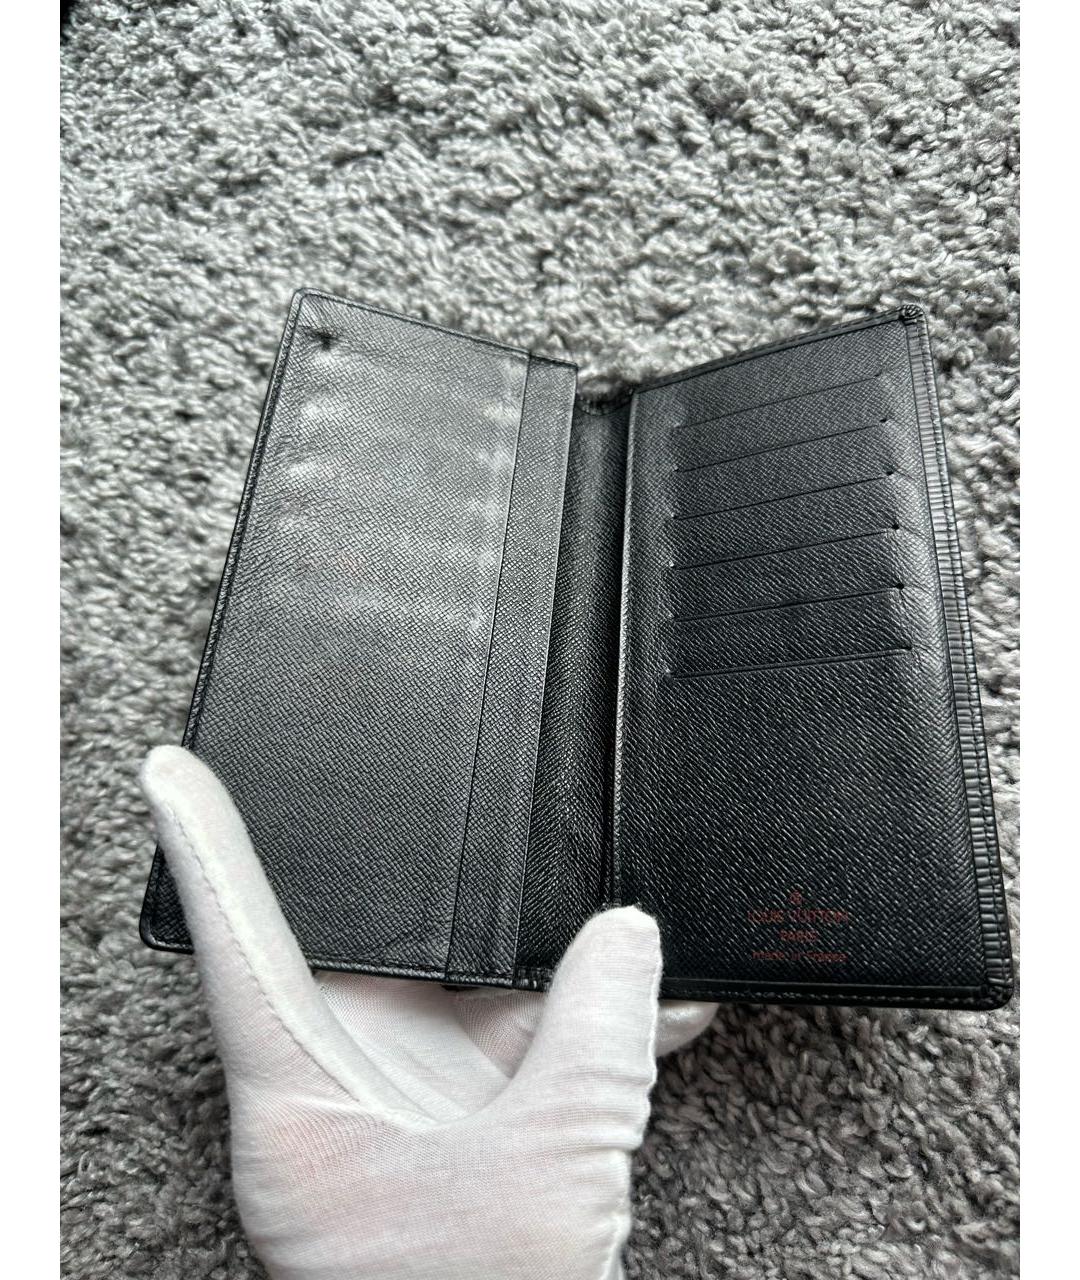 LOUIS VUITTON PRE-OWNED Черный кожаный кошелек, фото 4